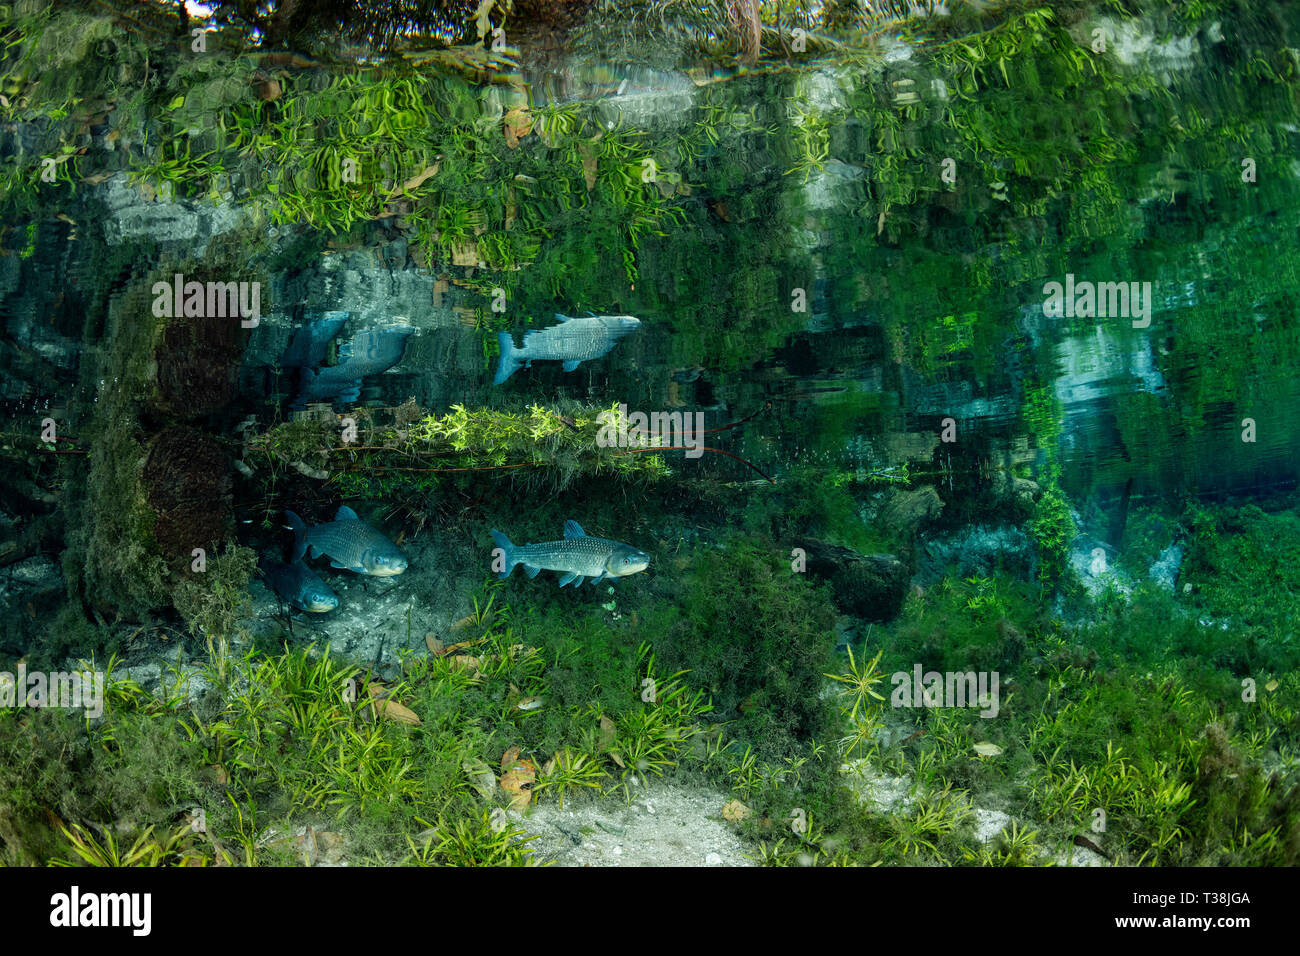 Underwater plants in Nascente Azul, Nascente Azul, Mato Grosso do Sul, Brazil Stock Photo